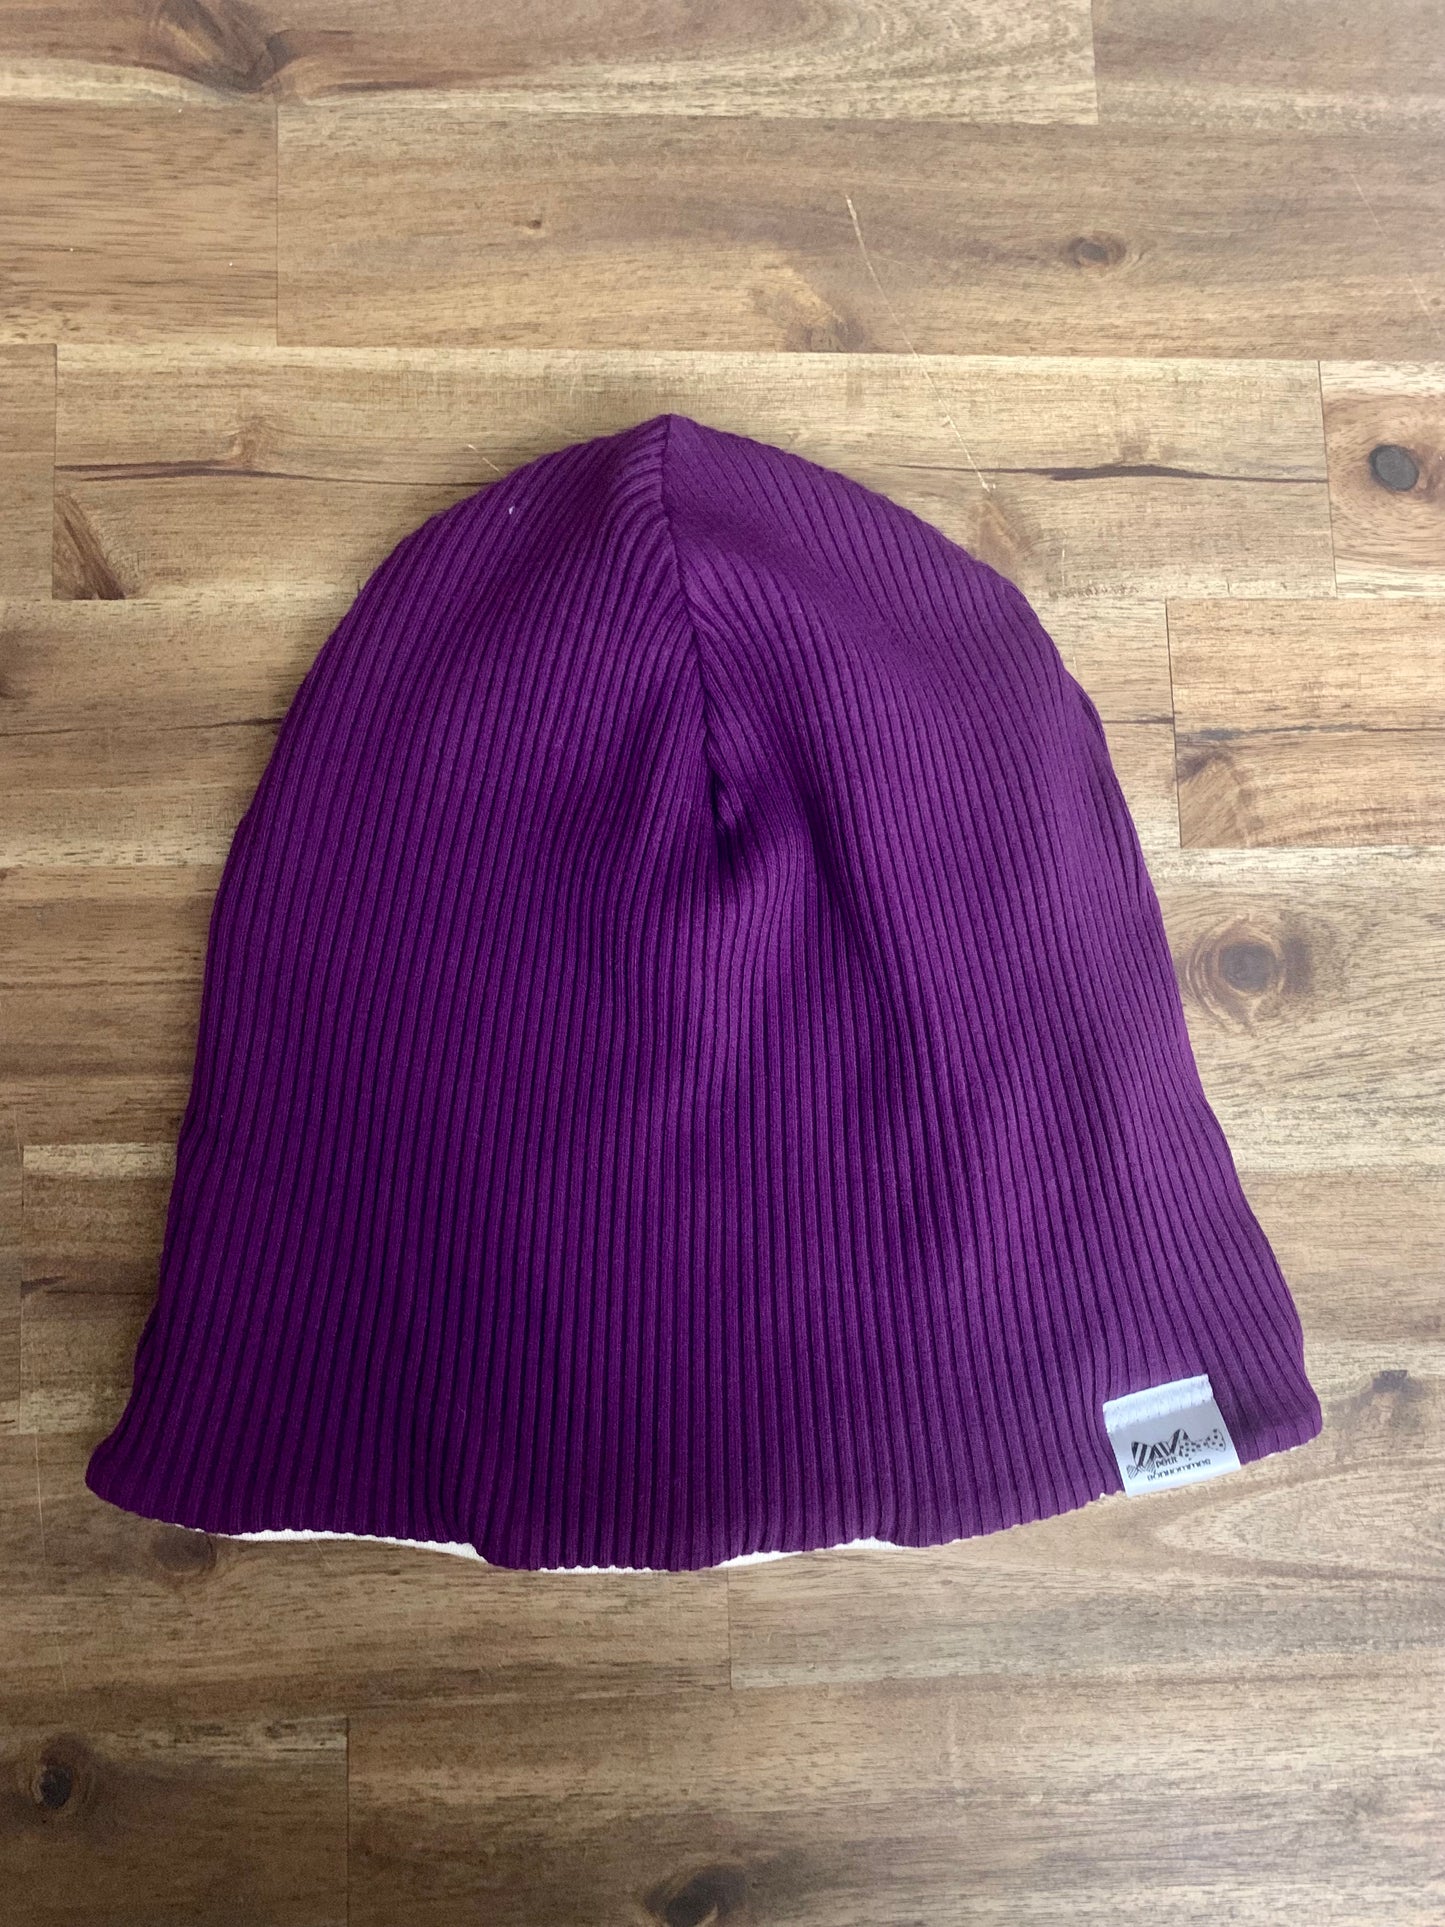 Slouchy Toque - Purple Rib Knit